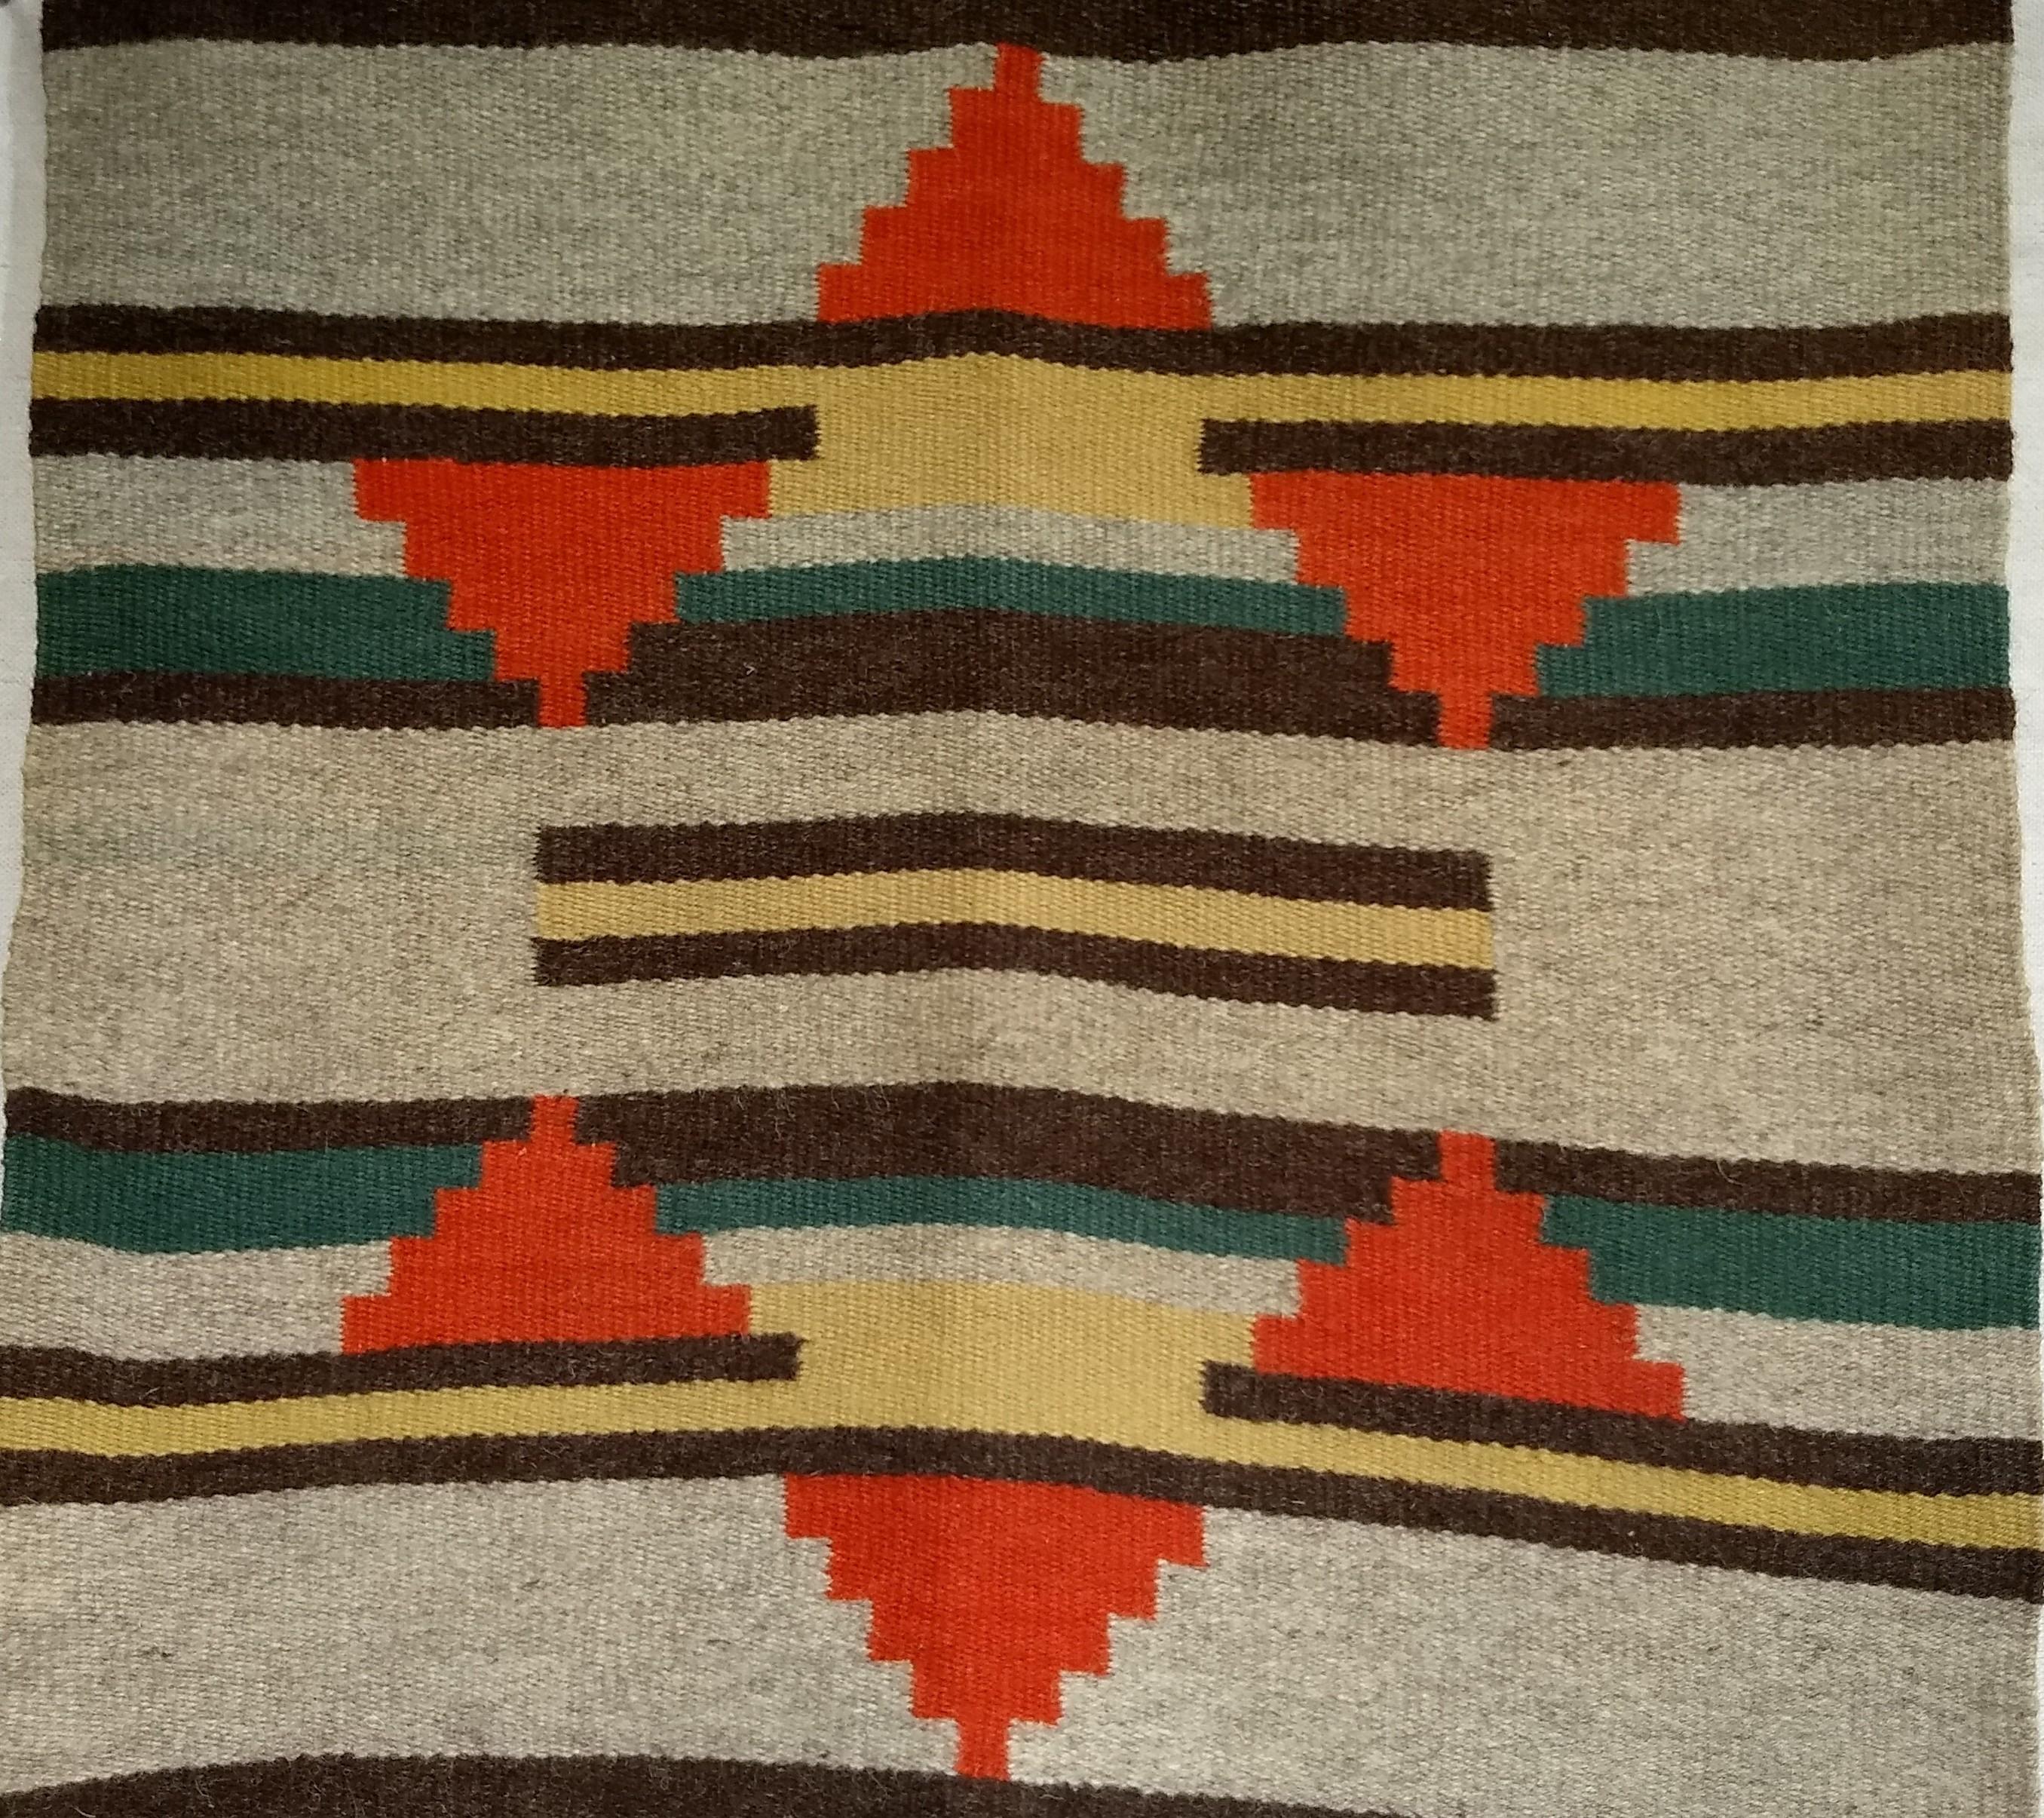 Vintage Native American Navajo rug est un tapis à motifs géométriques dans des tons de terre datant du milieu des années 1900.   Il s'agit d'un tapis au tissage très fin et à la laine extrêmement luxuriante et douce.  Le tapis présente un motif